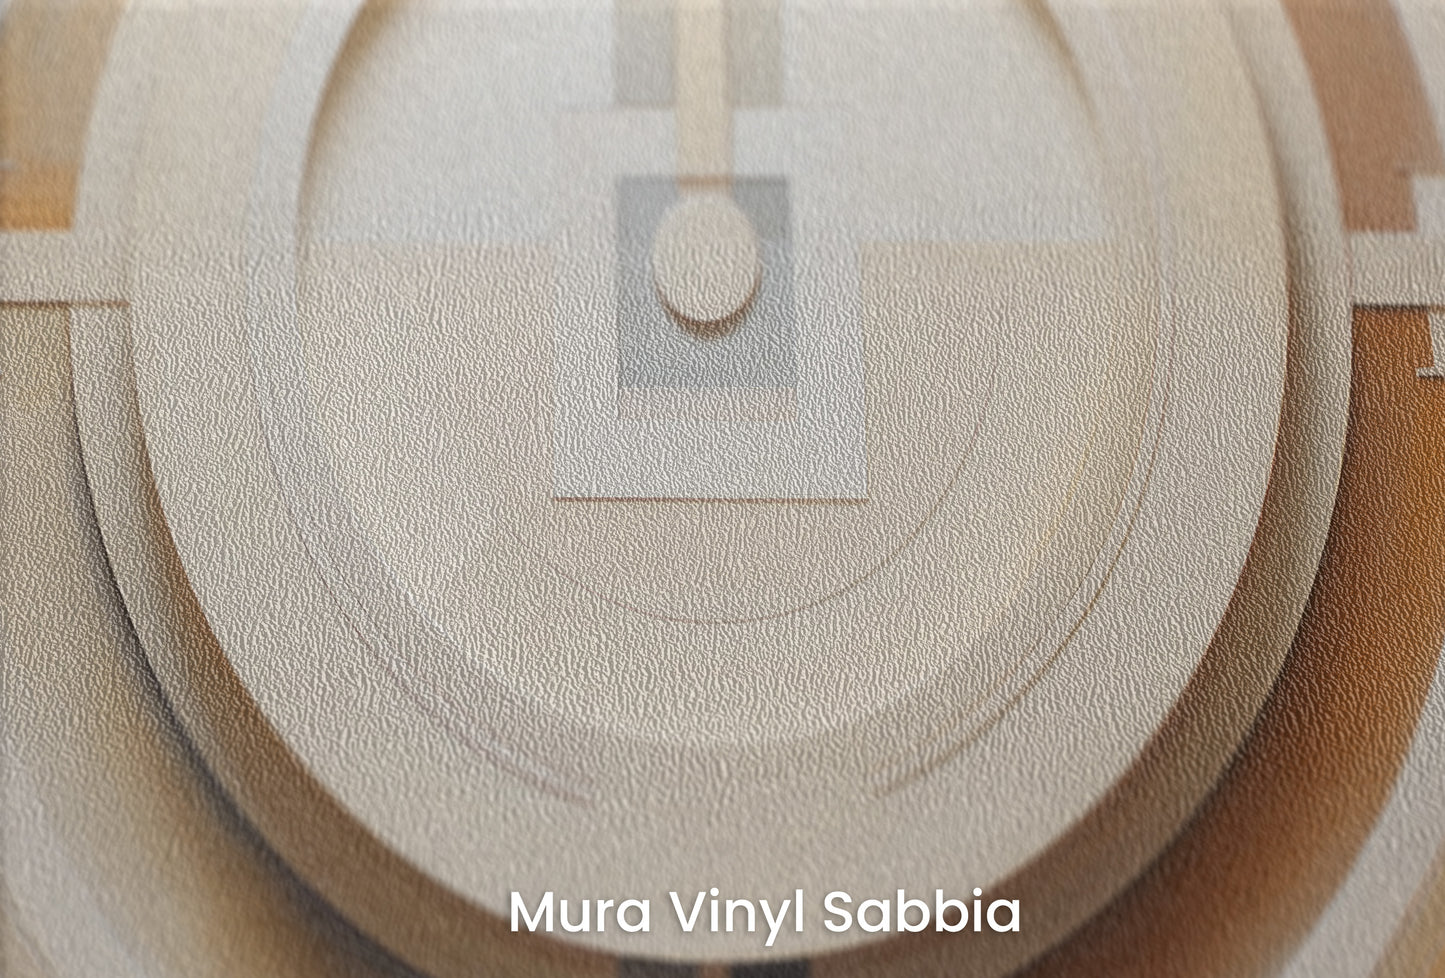 Zbliżenie na artystyczną fototapetę o nazwie CUBIST CONCENTRIC SPLENDOR na podłożu Mura Vinyl Sabbia struktura grubego ziarna piasku.